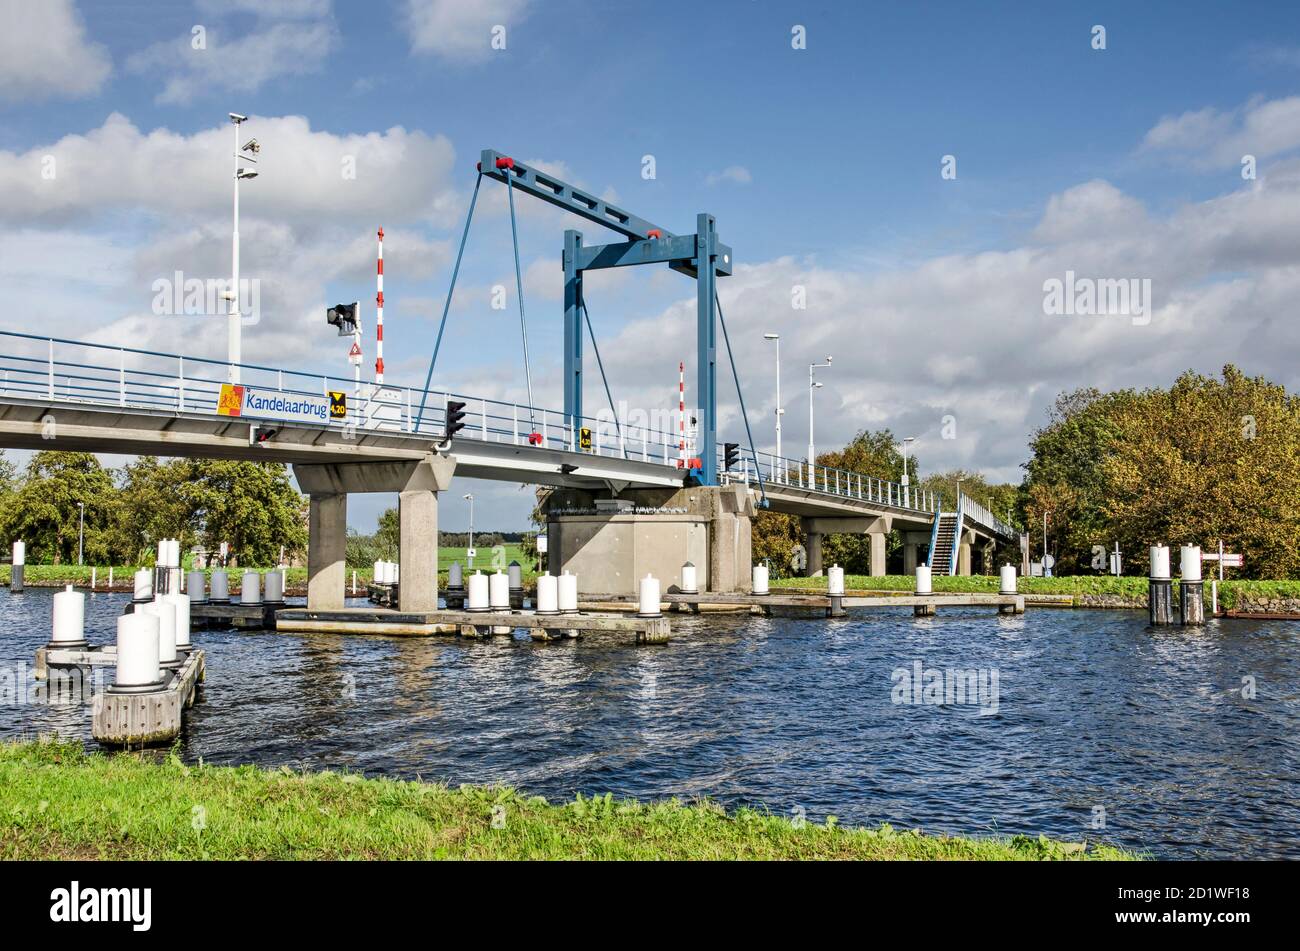 Schipluiden, The Netherlands, October 4, 2020: Kandelaar bridge for  pedestrians and cyclists across the river Schie between Delft and Schiedam  Stock Photo - Alamy